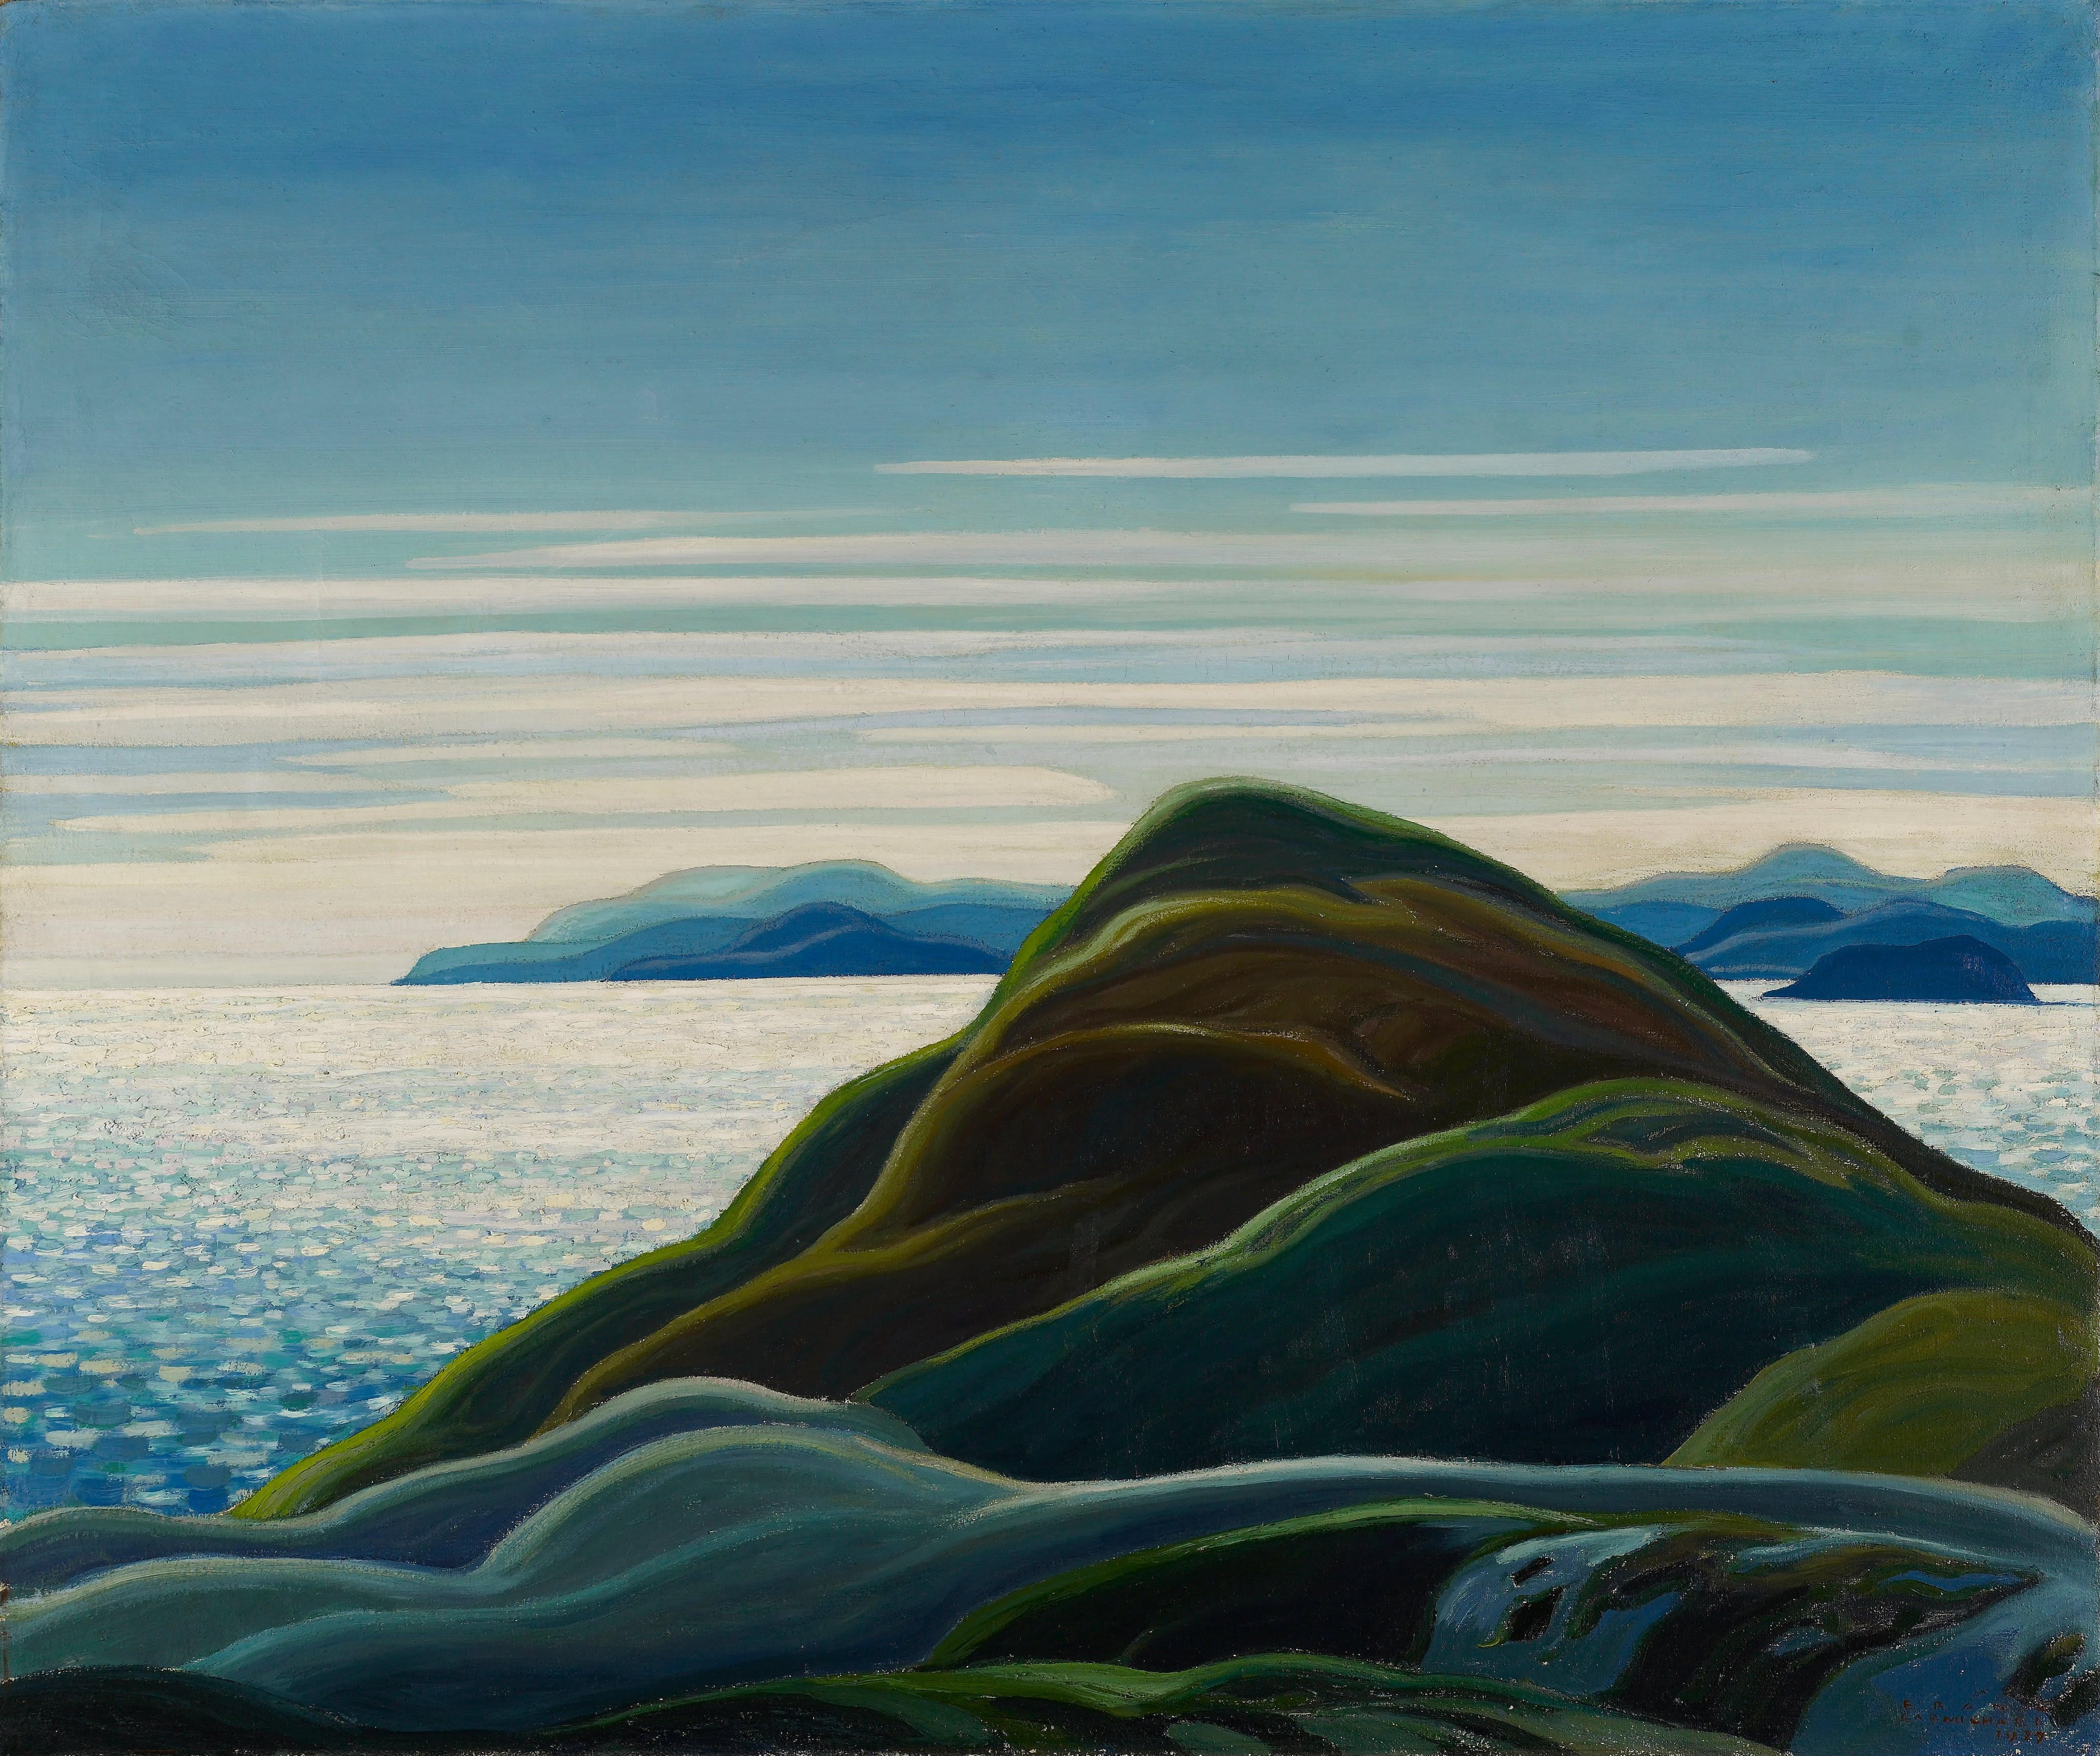 Північне узбережжя, озеро Верхнє by Franklin Carmichael - 1927 - 122.5 x 102.8 см 